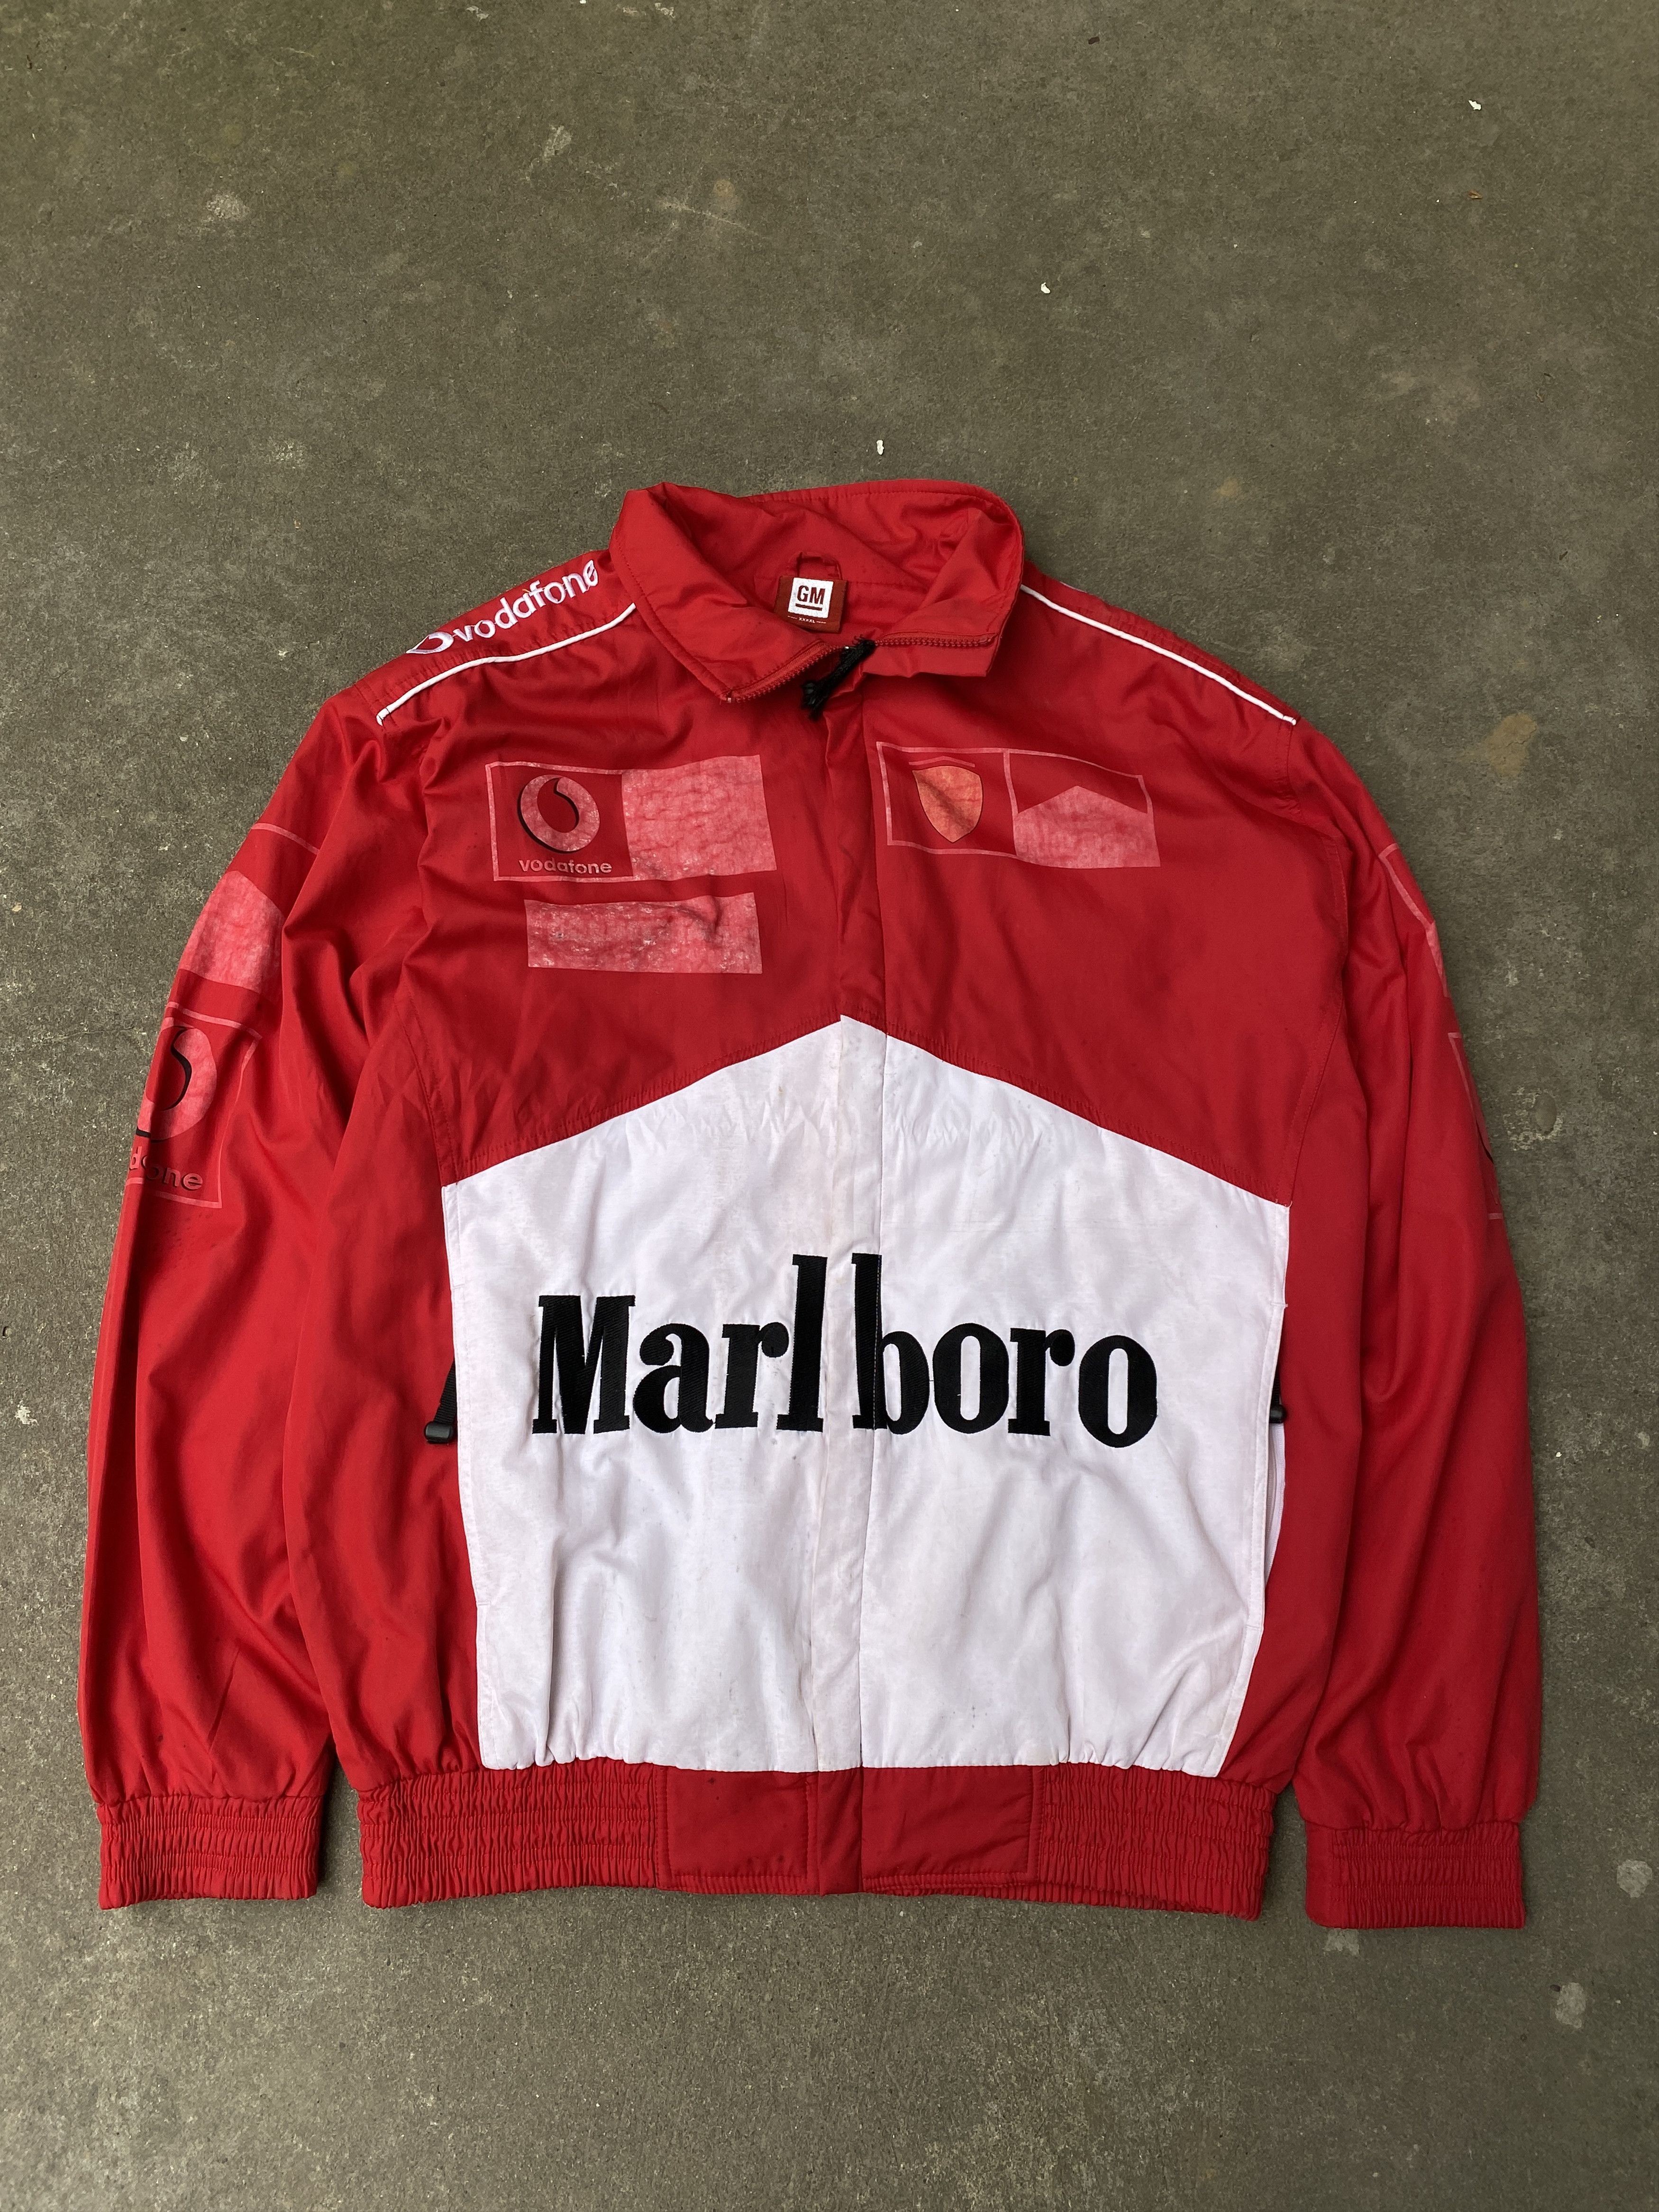 Vintage Vintage Marlboro Ferrari Racing Jacket F1 | Grailed